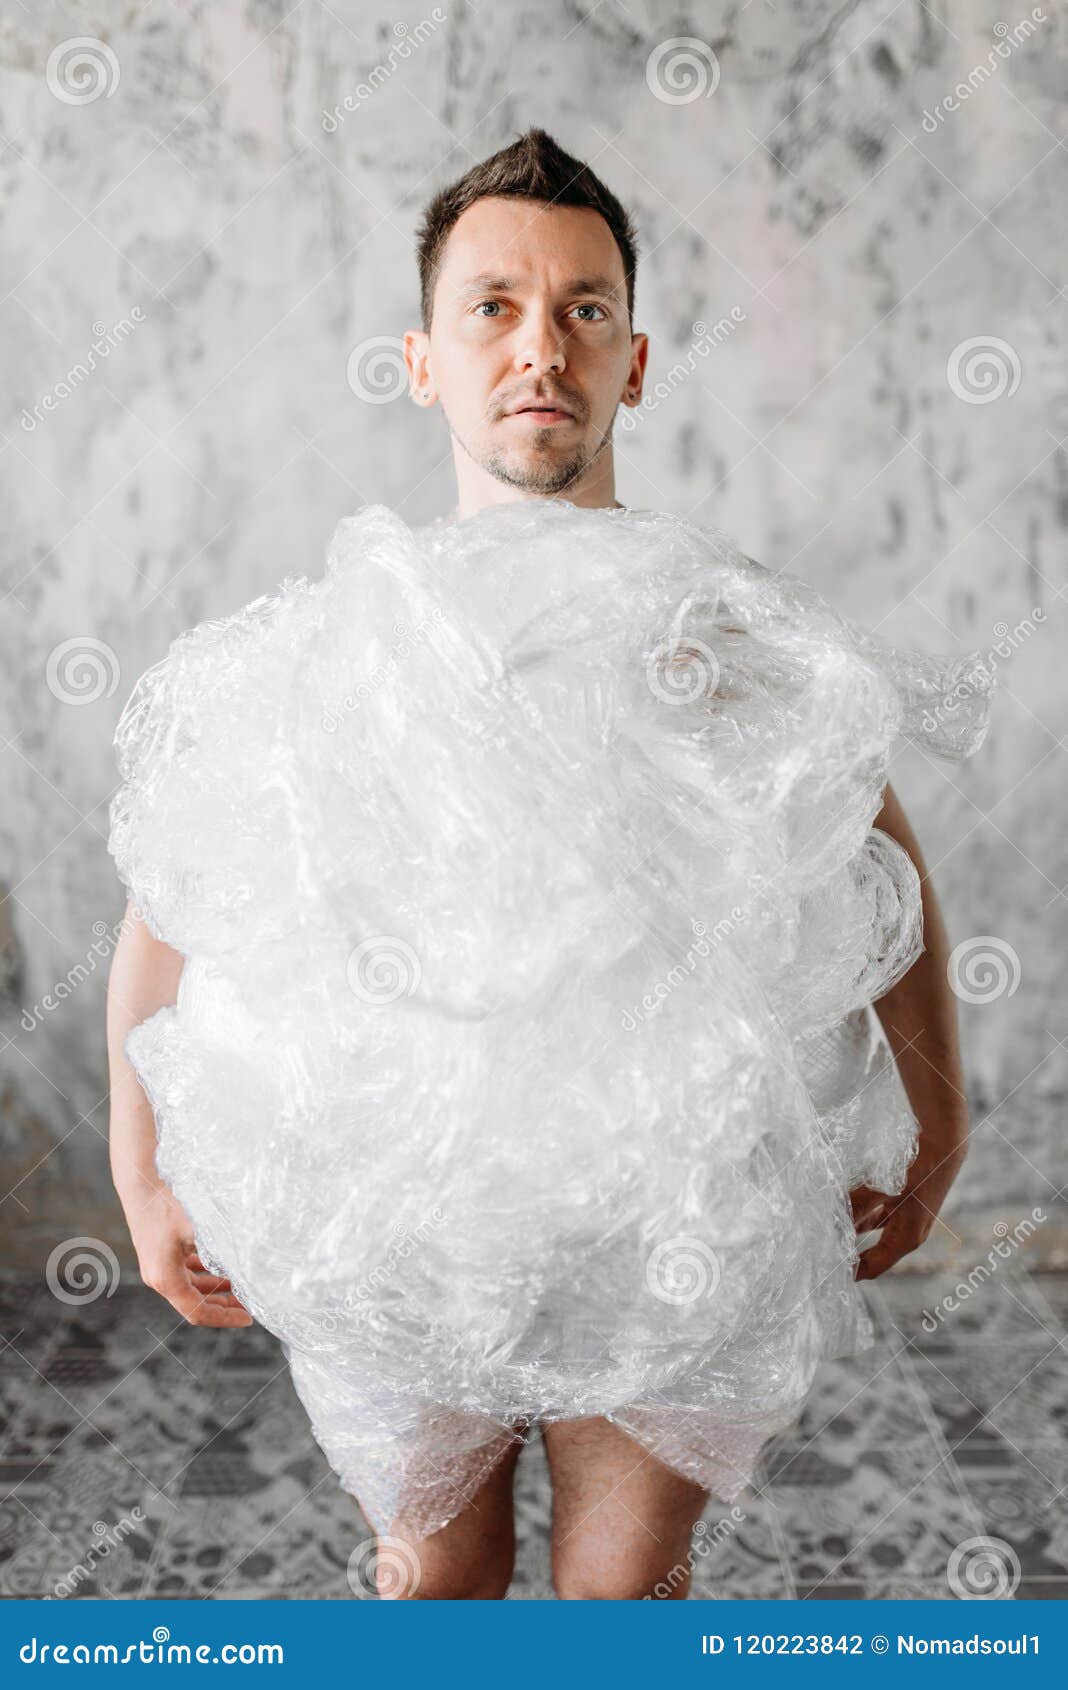 bubble wrap suit funny